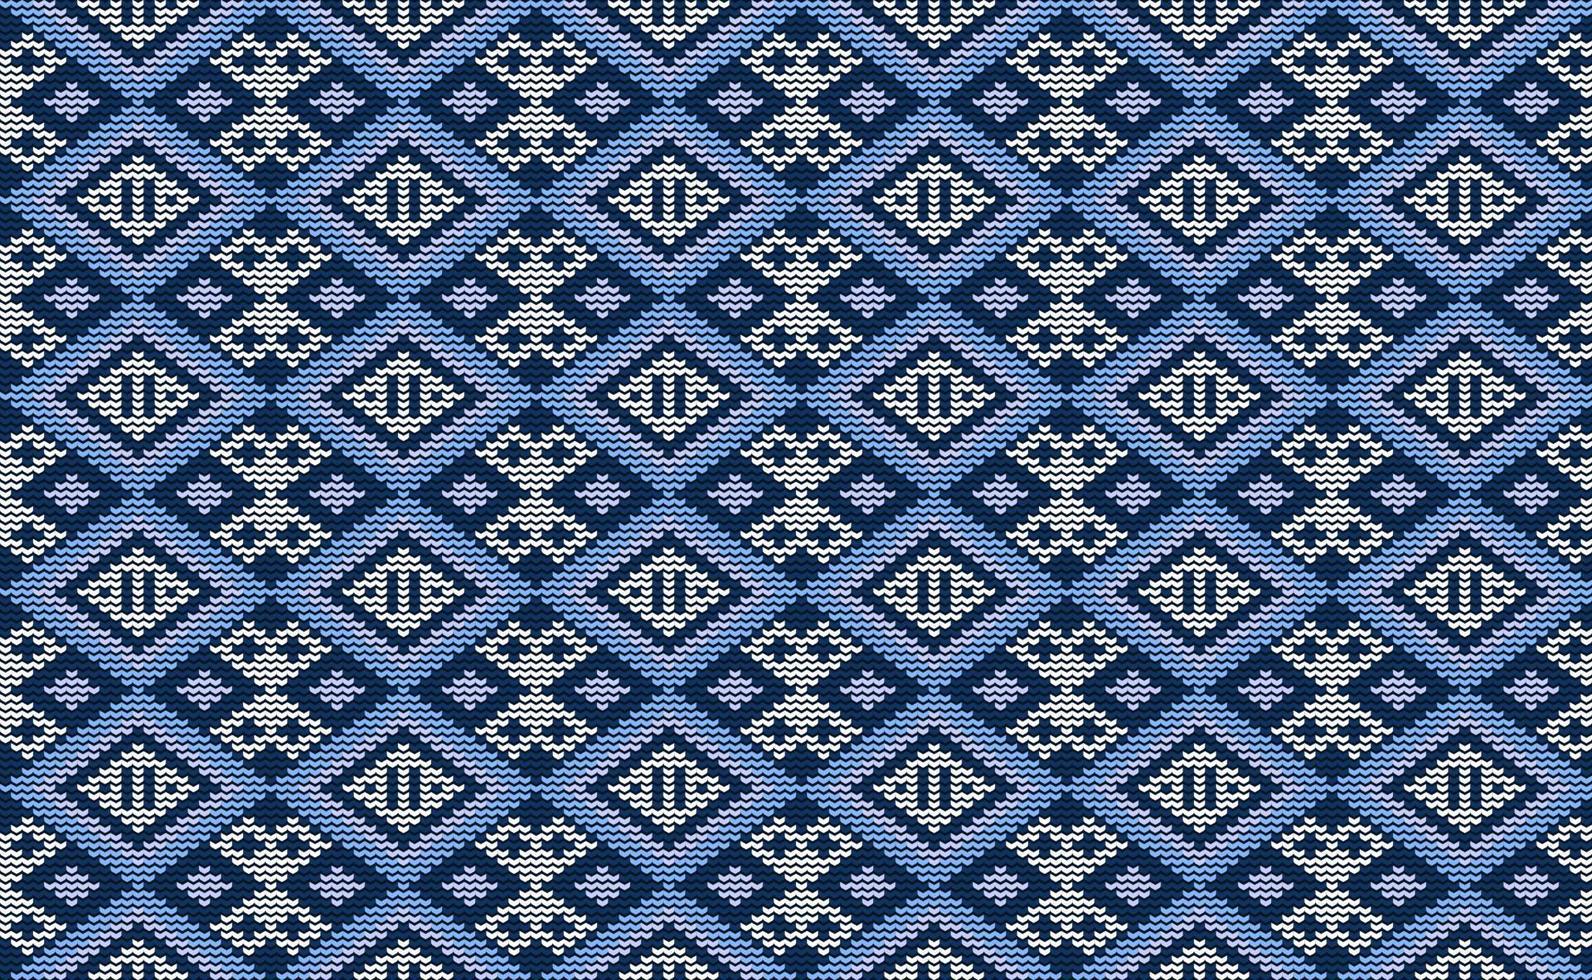 vetor de padrão de malha branco e azul, fundo de modelo de bordado, crochê têxtil para impressão digital